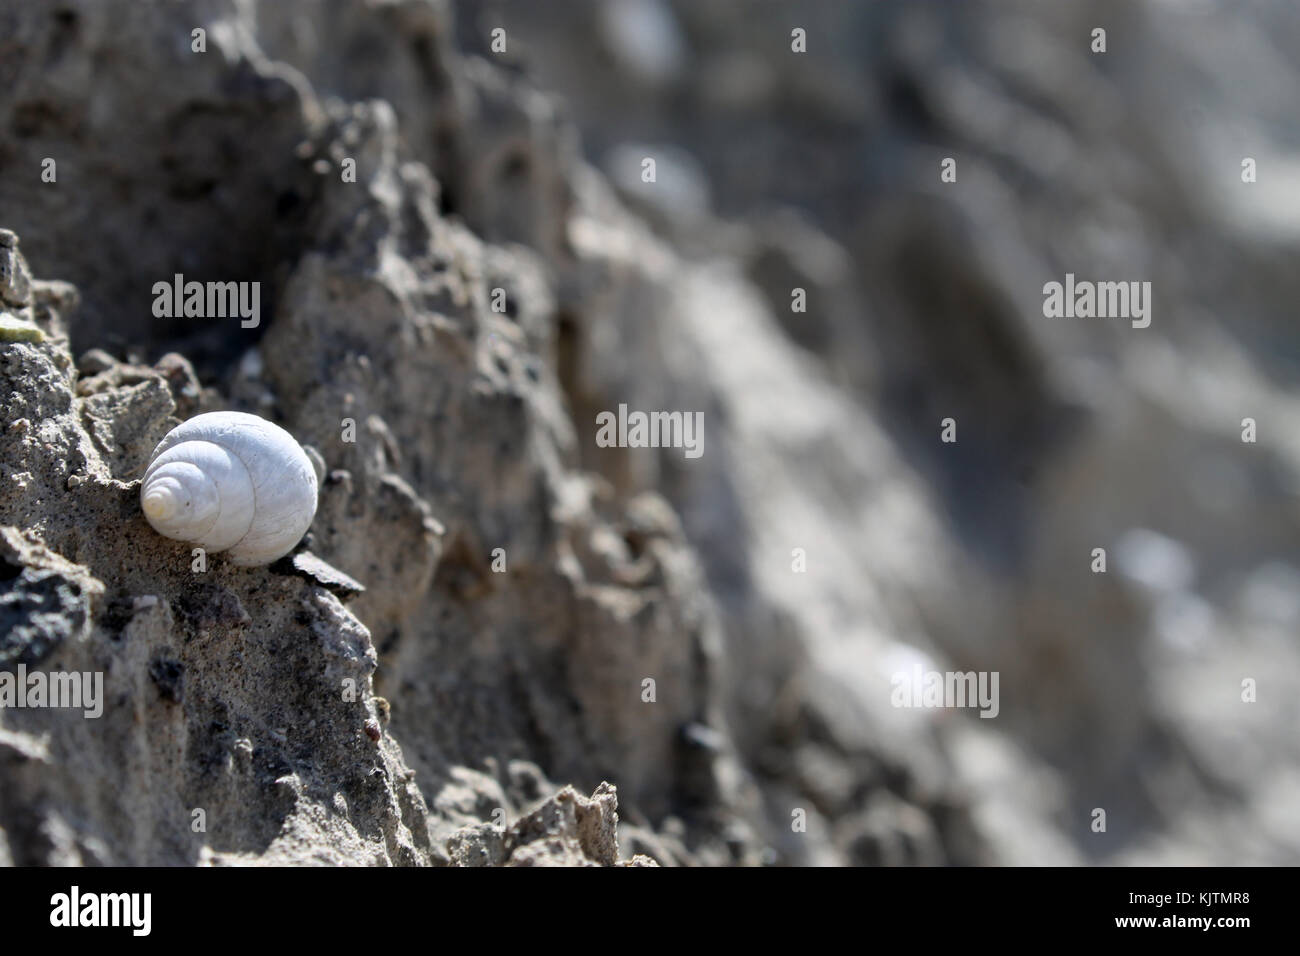 Photograph of a snail, called in Ecuador 'Churo' Stock Photo